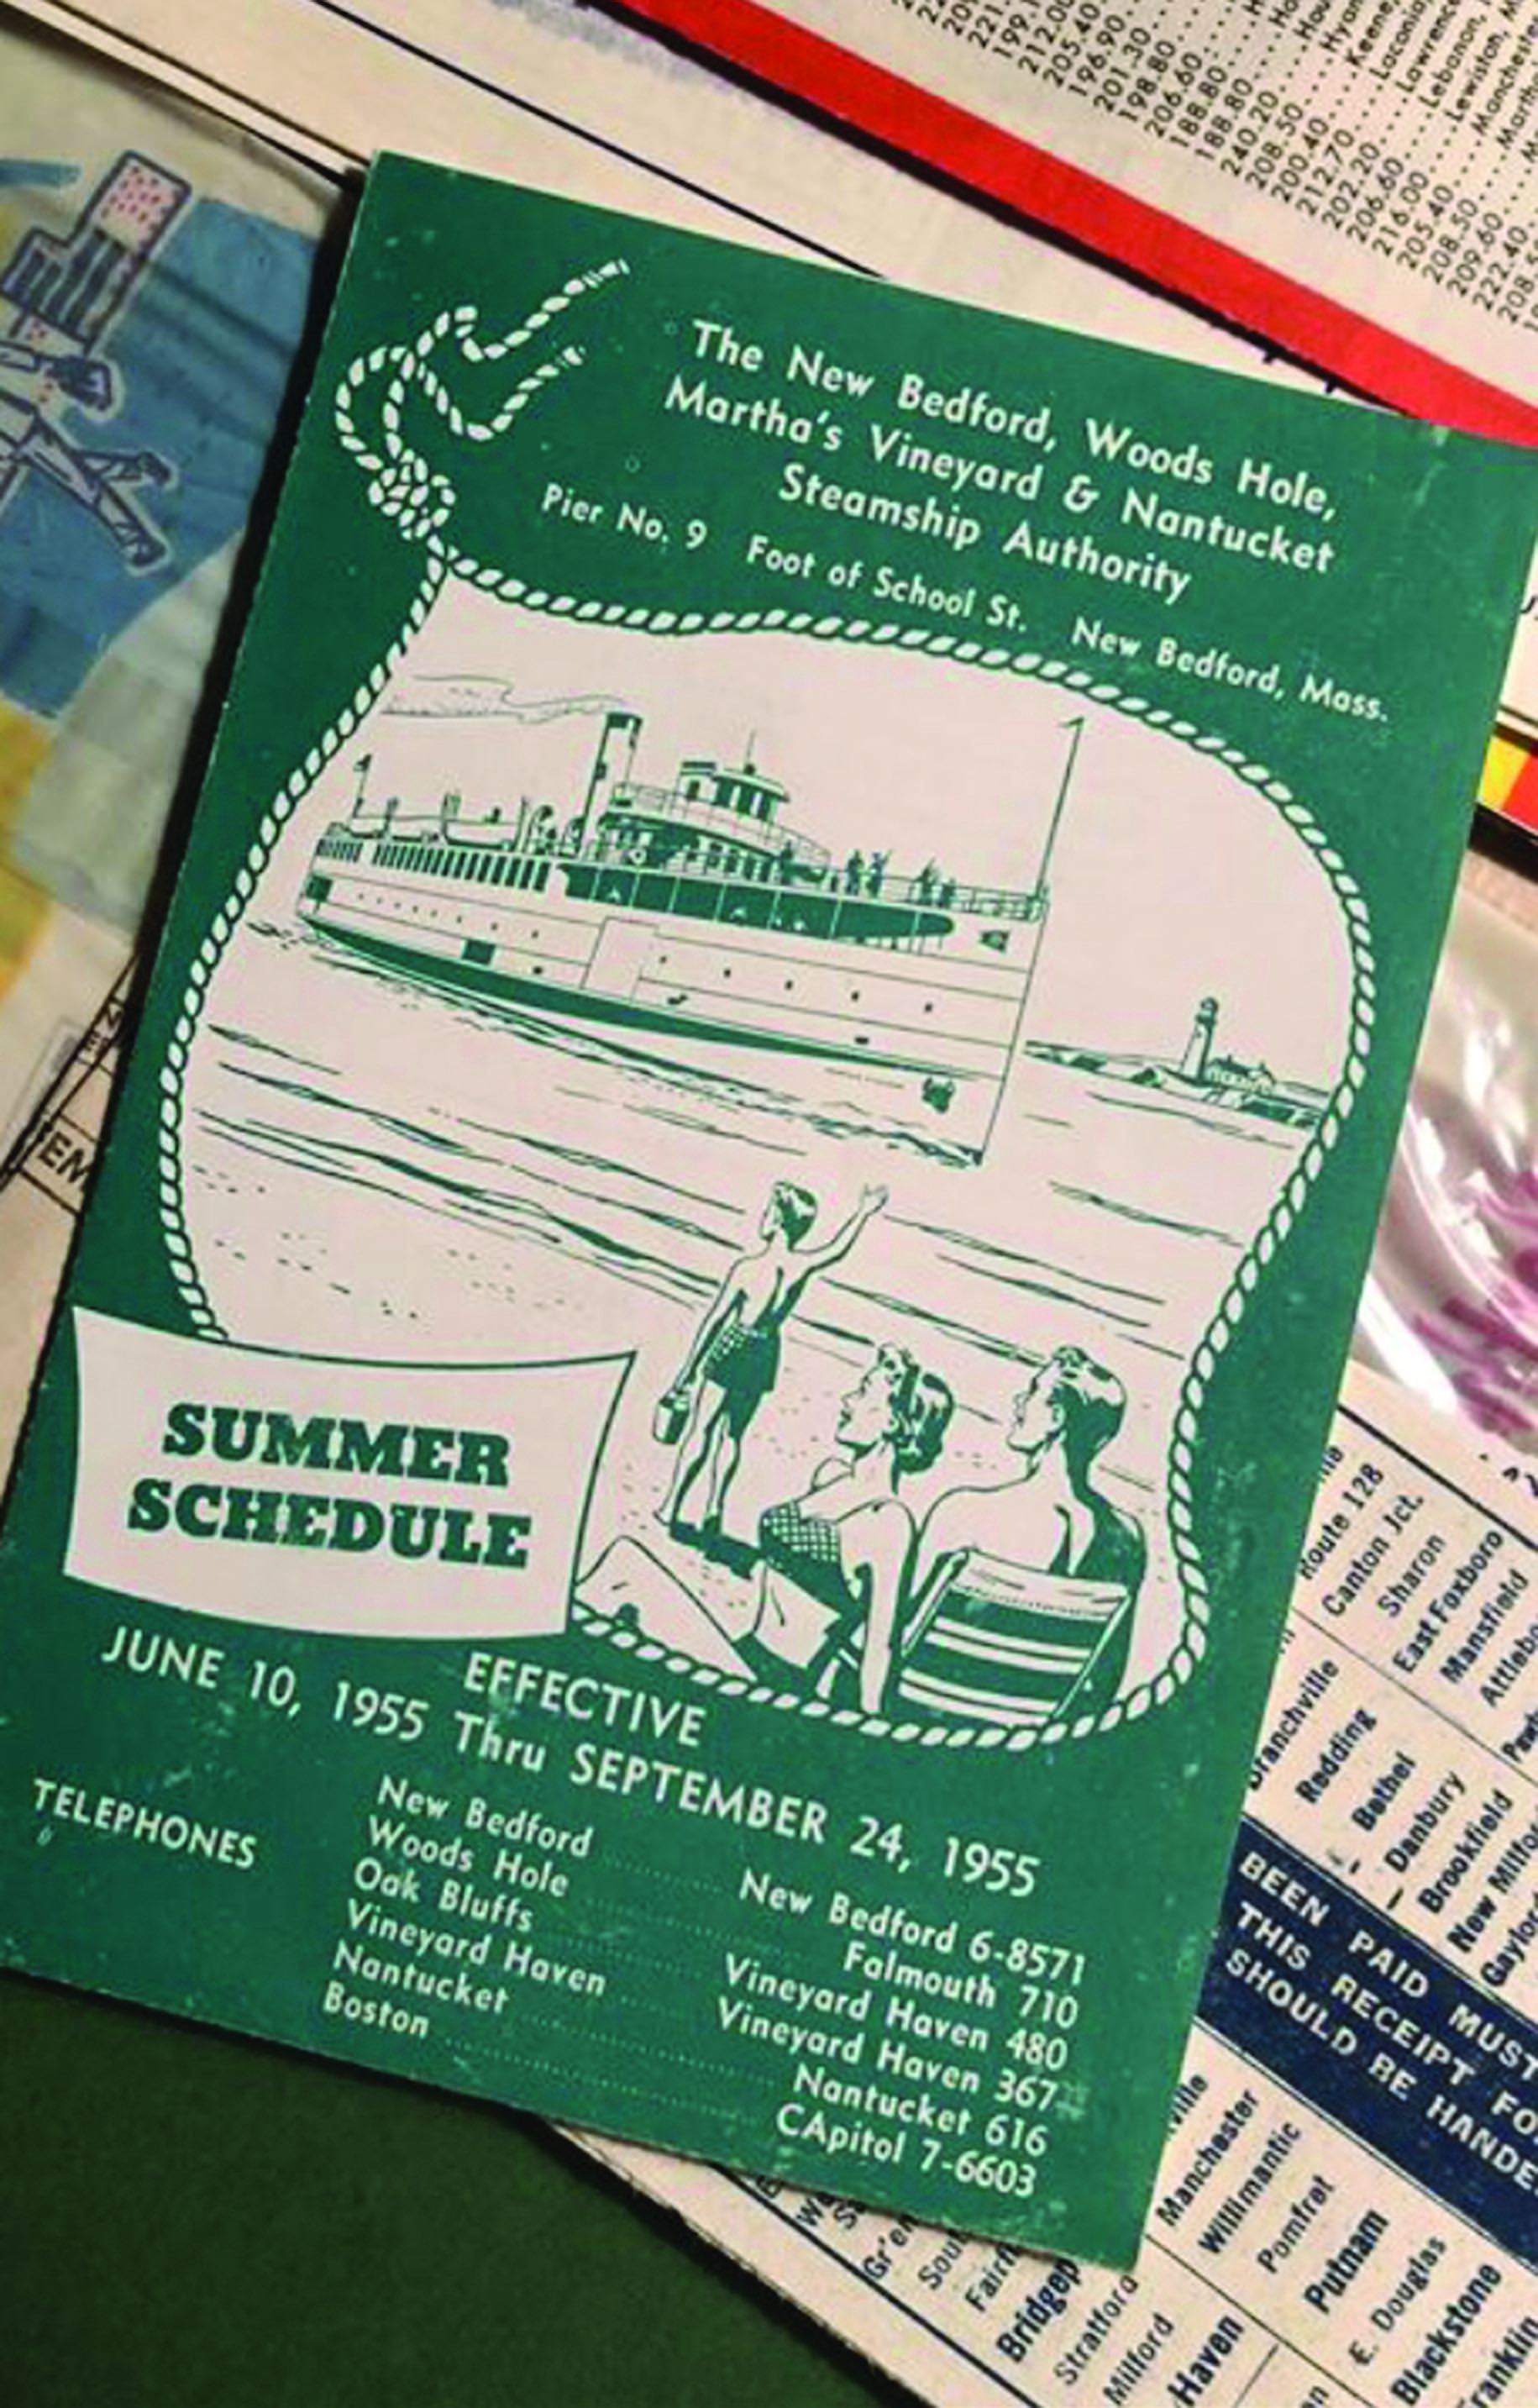 1955 summer schedule.jpg